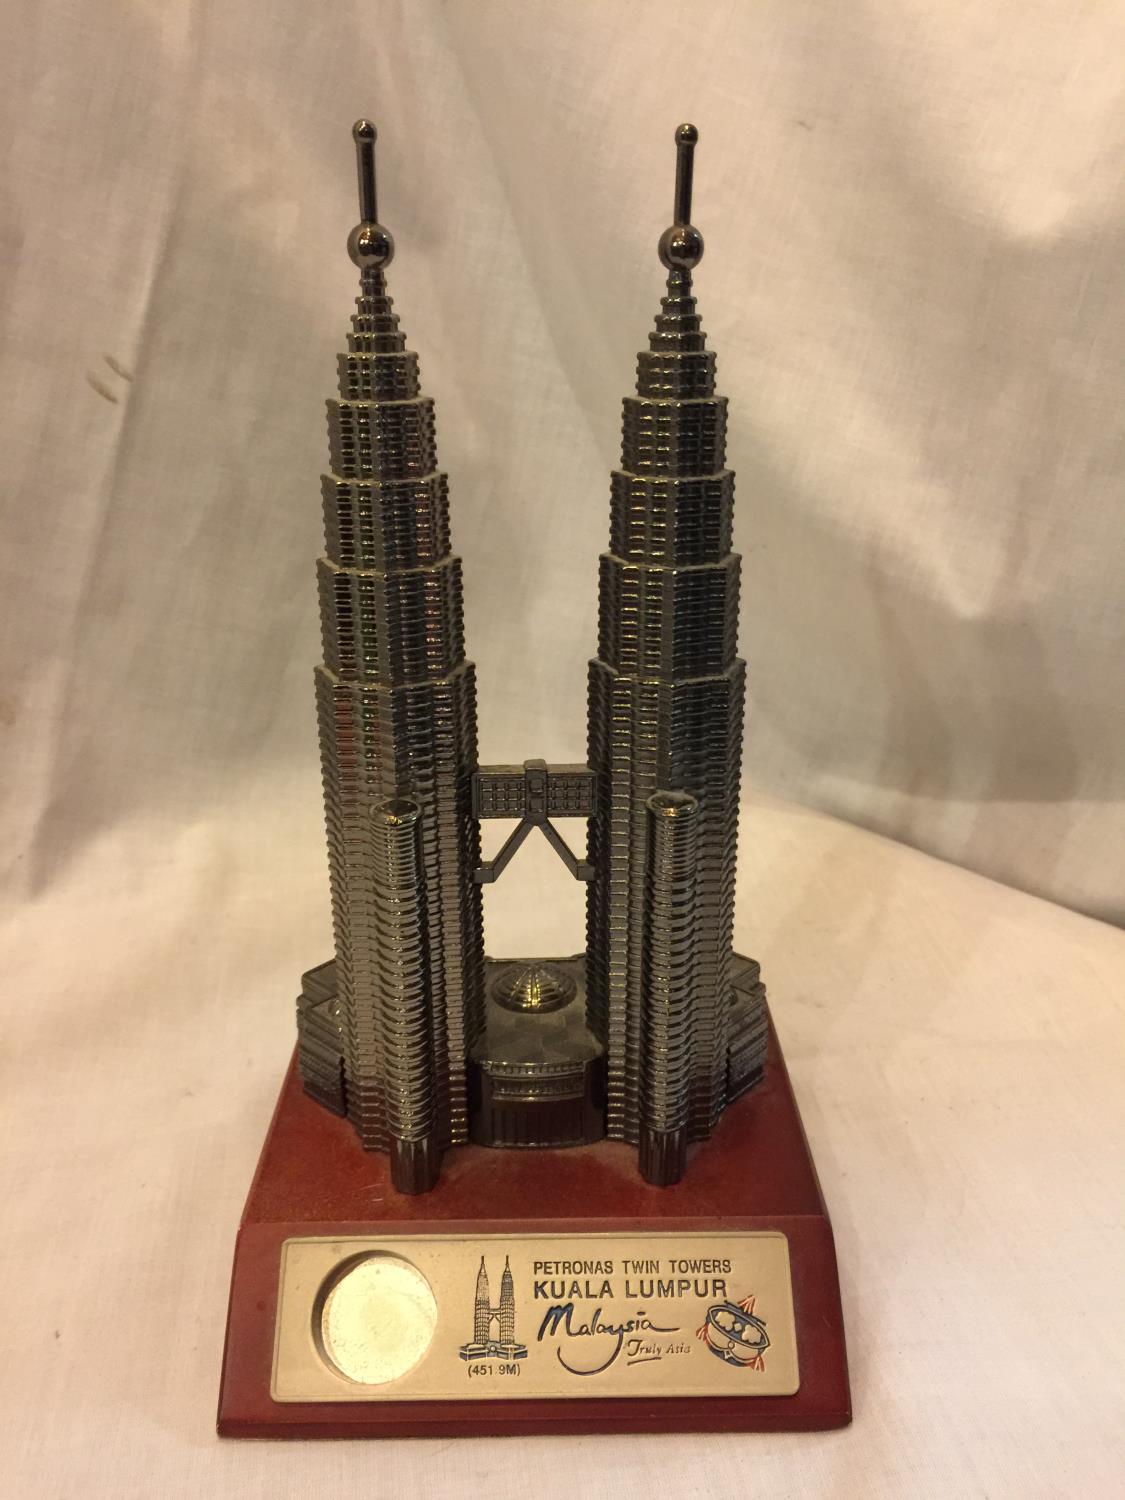 A MODEL OF THE TWIN TOWERS KUALA LUMPUR, MALAYSIA